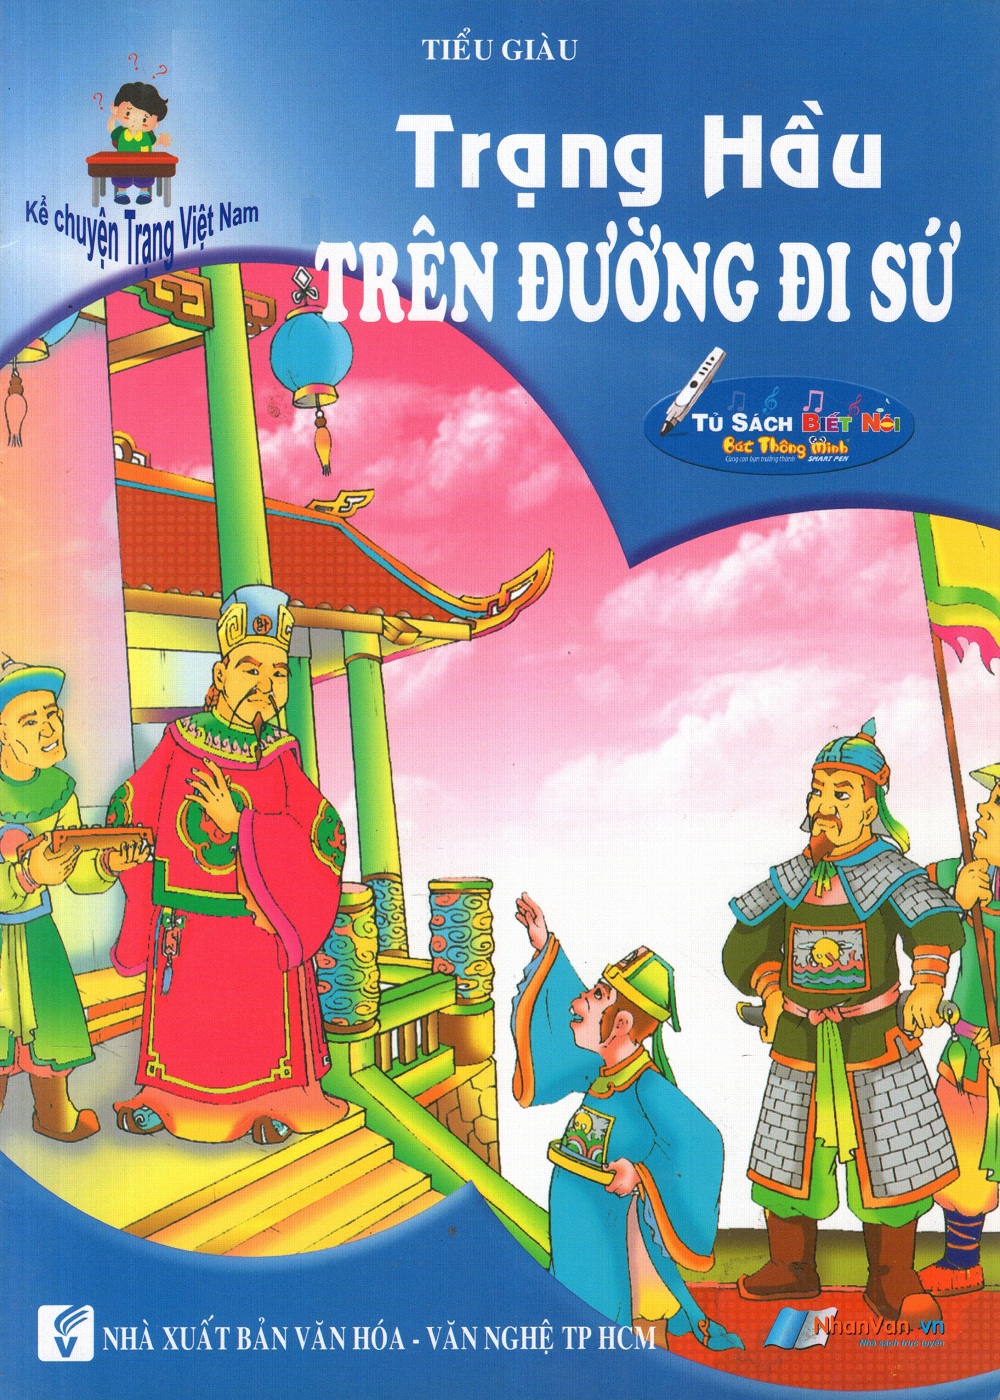 Bìa sách Kể Chuyện Trạng Việt Nam: Trạng Hầu - Trên Đường Đi Sứ